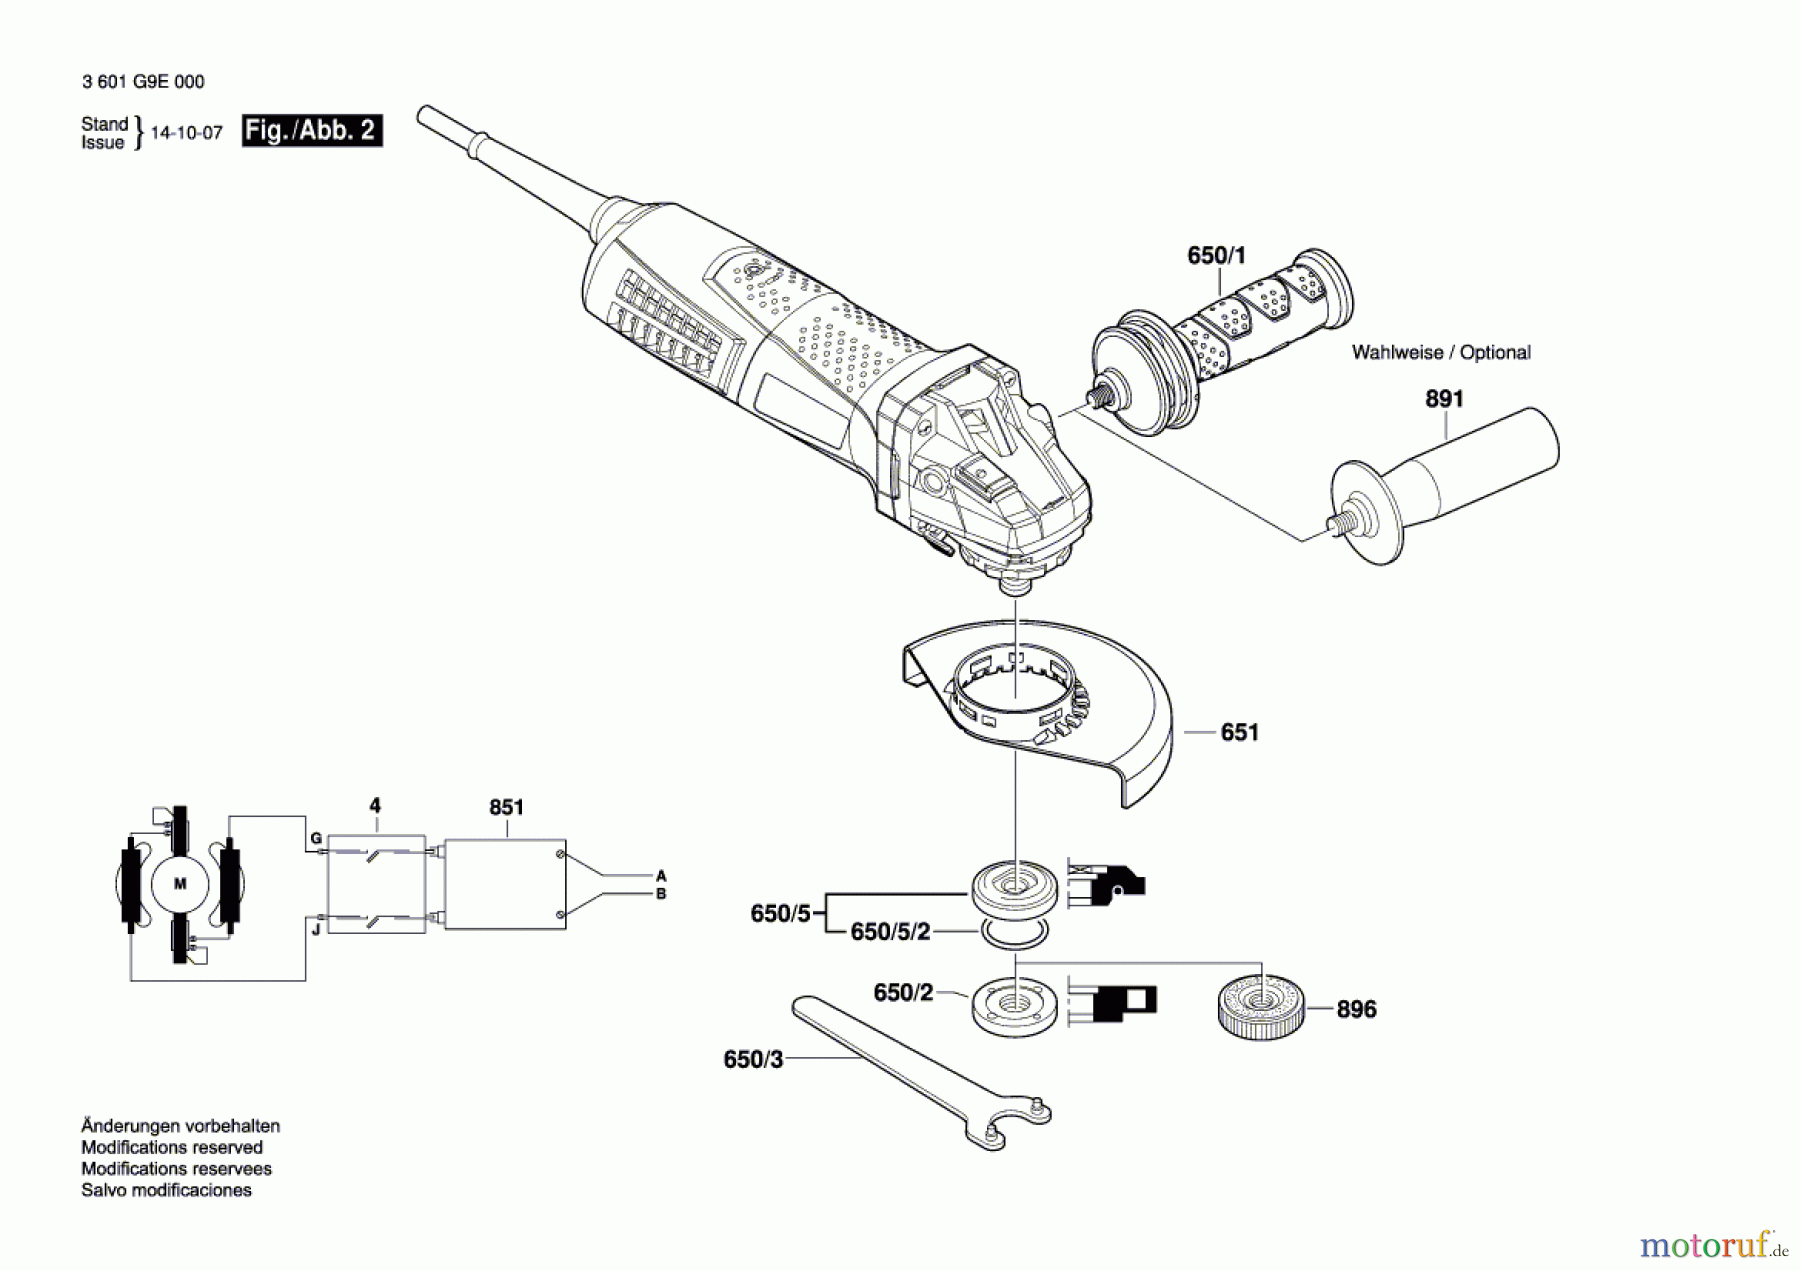  Bosch Werkzeug Winkelschleifer GWS 13-125 CI Seite 2